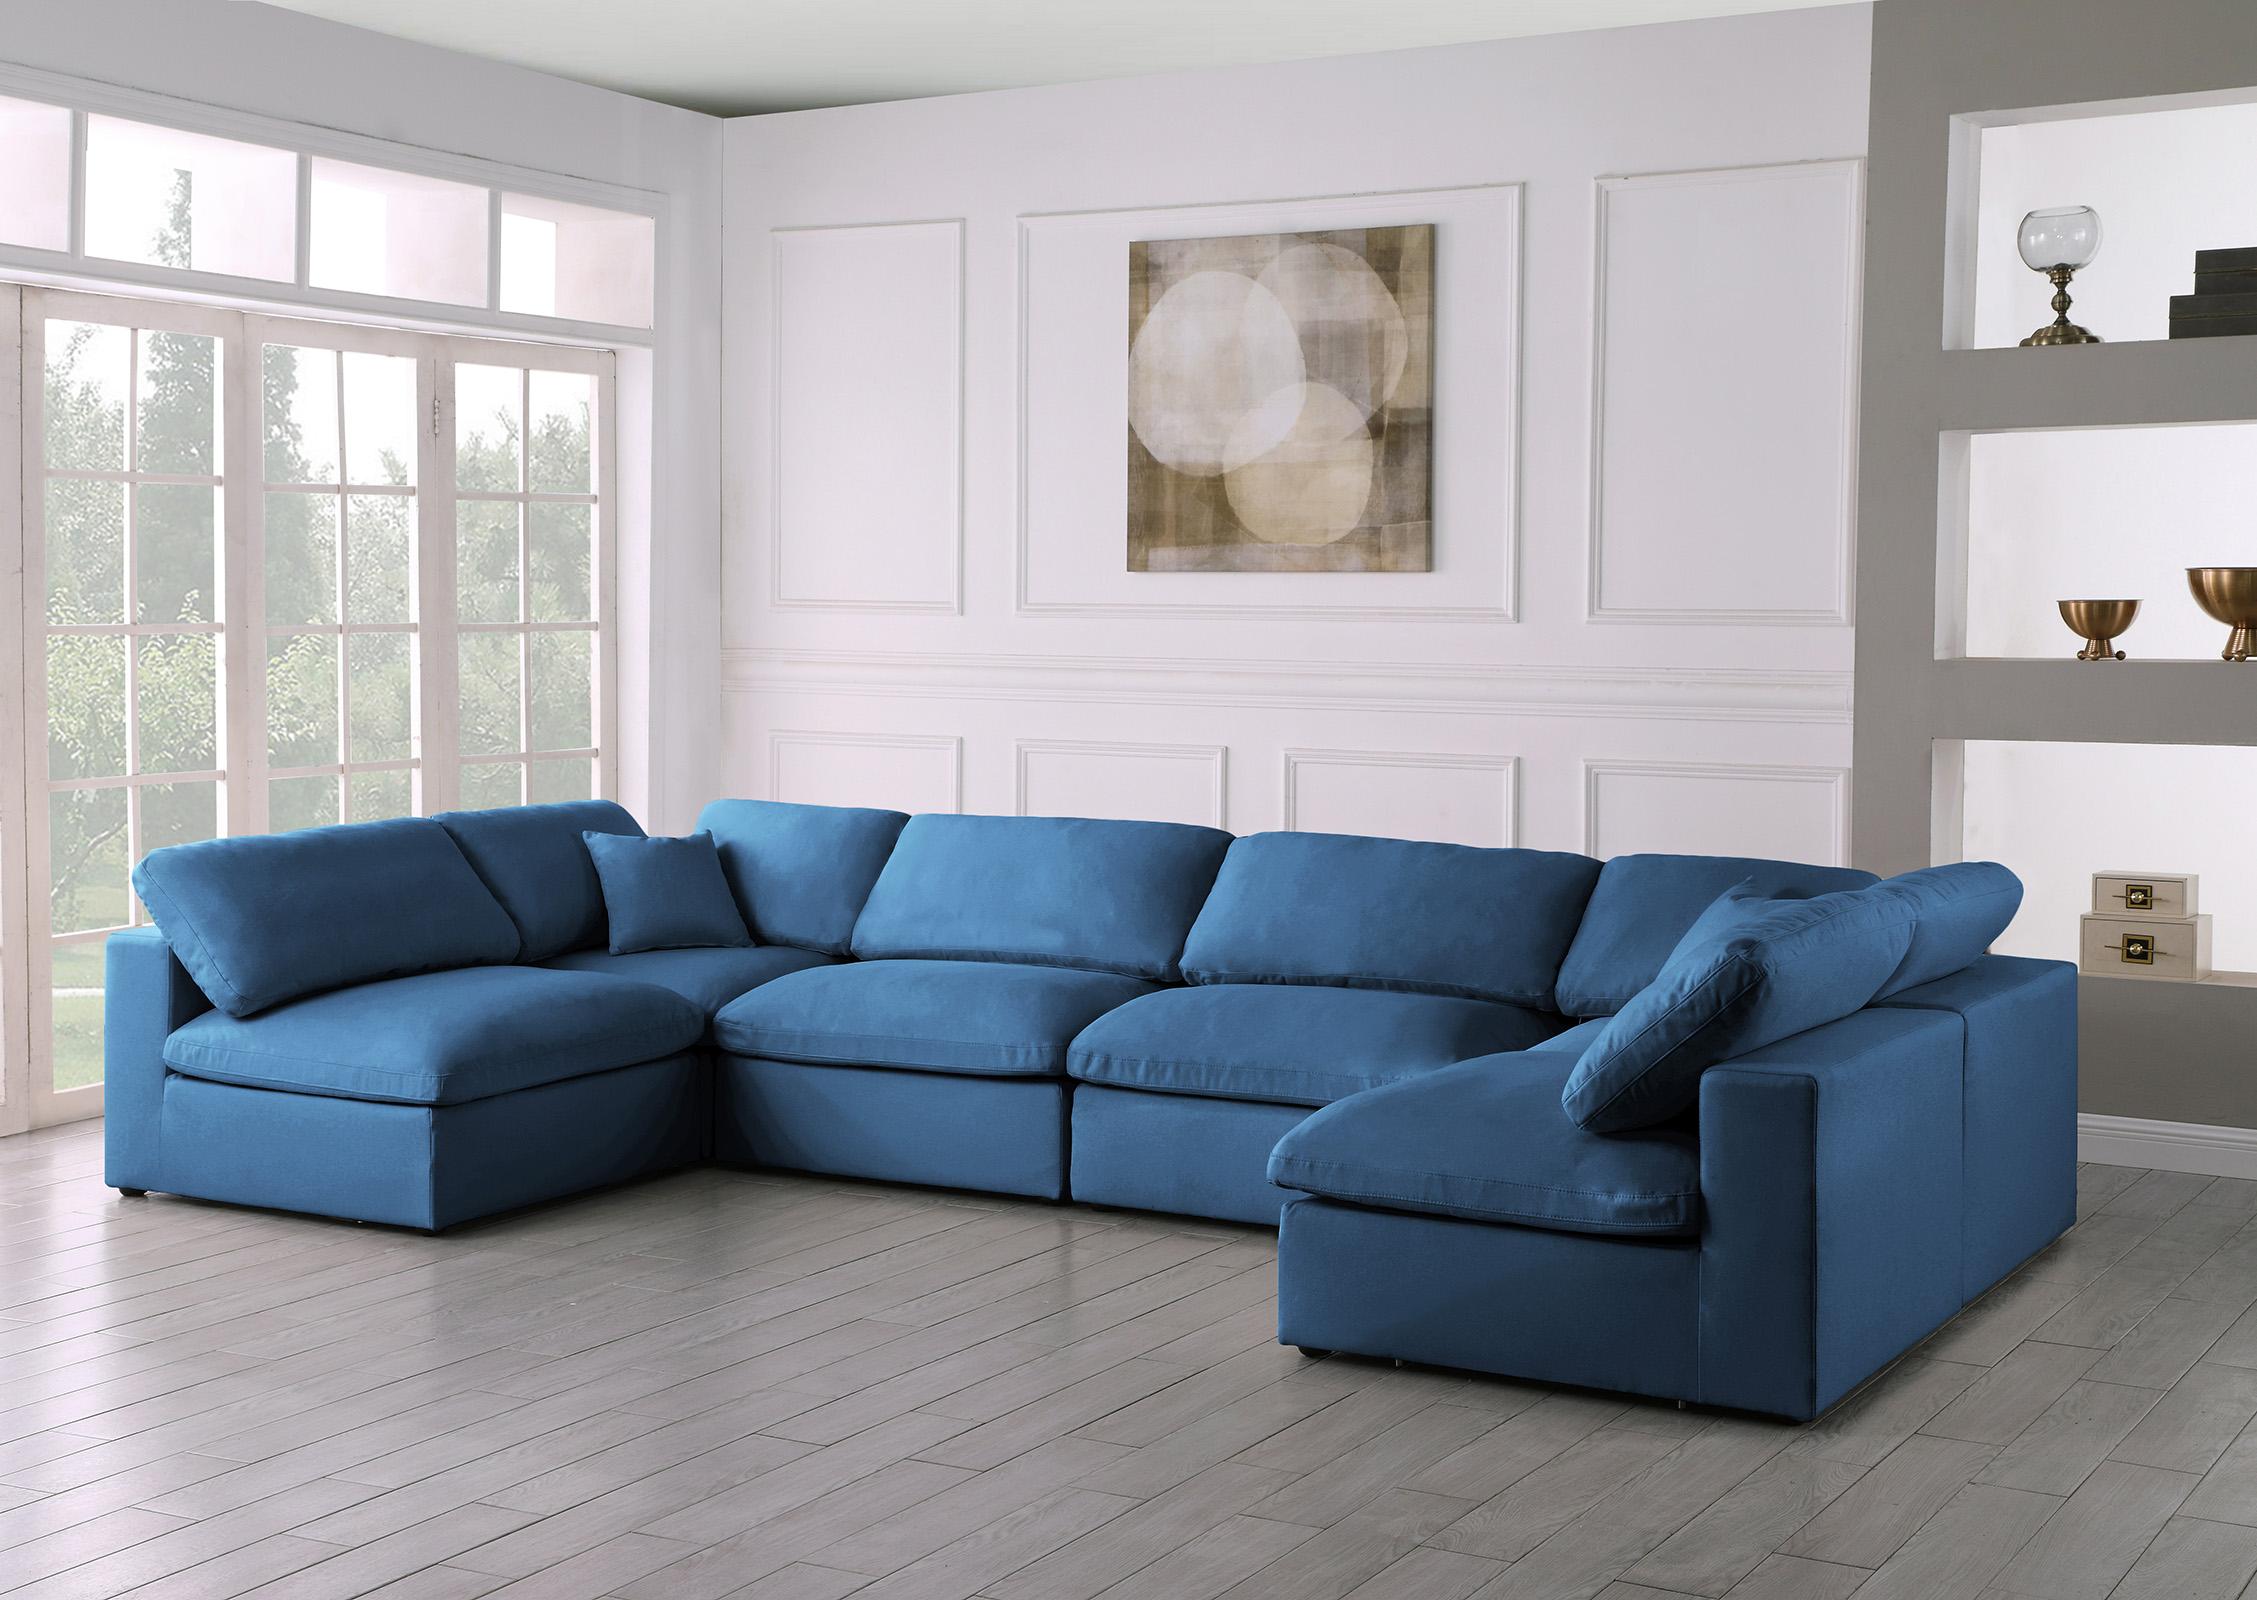 

    
Meridian Furniture 602Navy-Sec6D Modular Sectional Sofa Navy 602Navy-Sec6D
